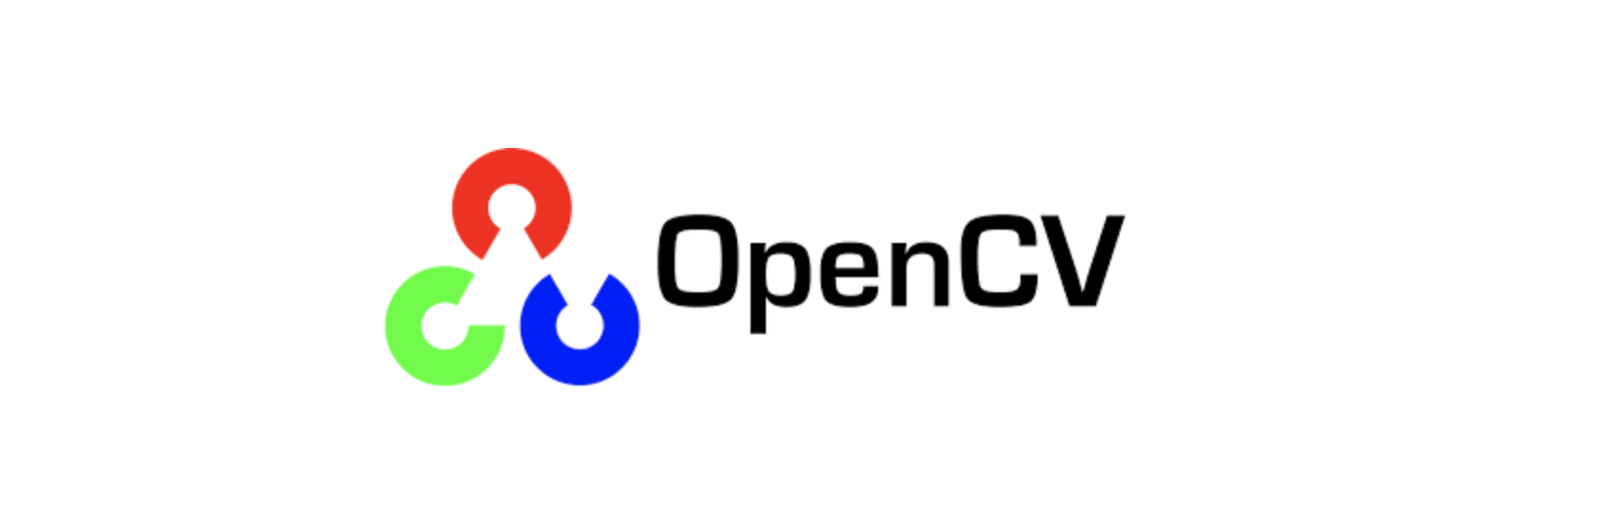 opencv 관련 글 목차